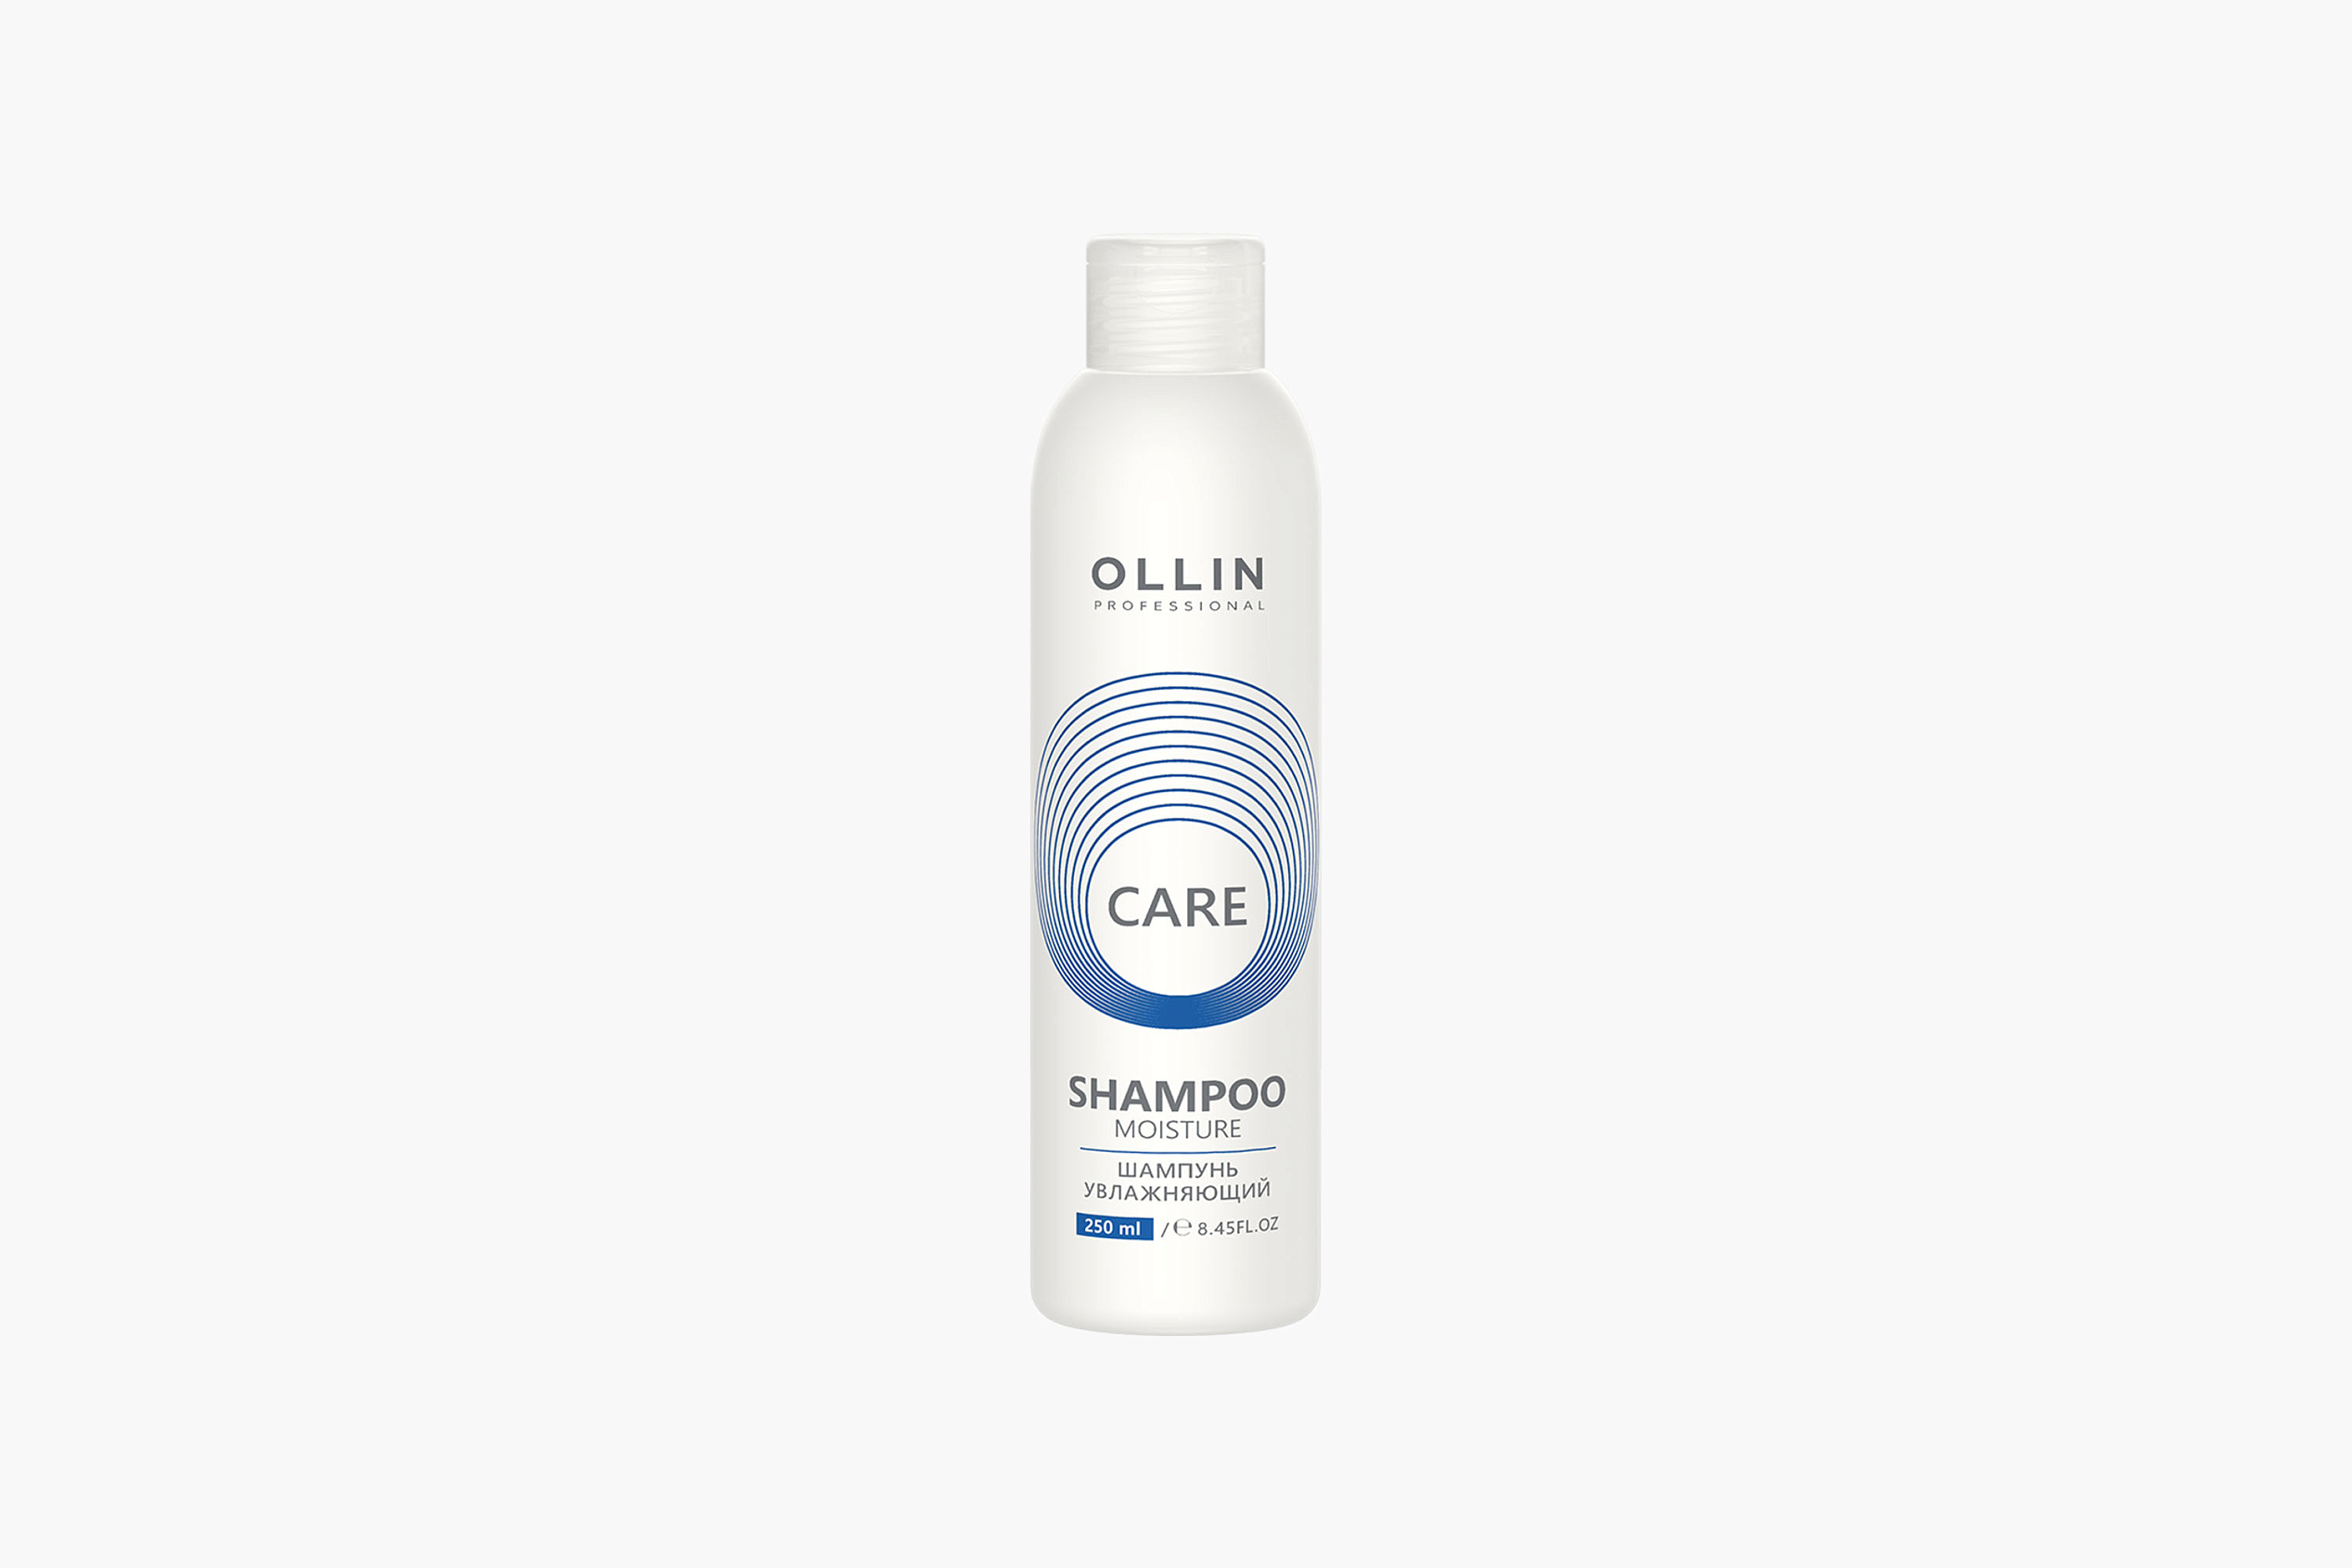 Ollin Professional Care Moisture Shampoo фото 1